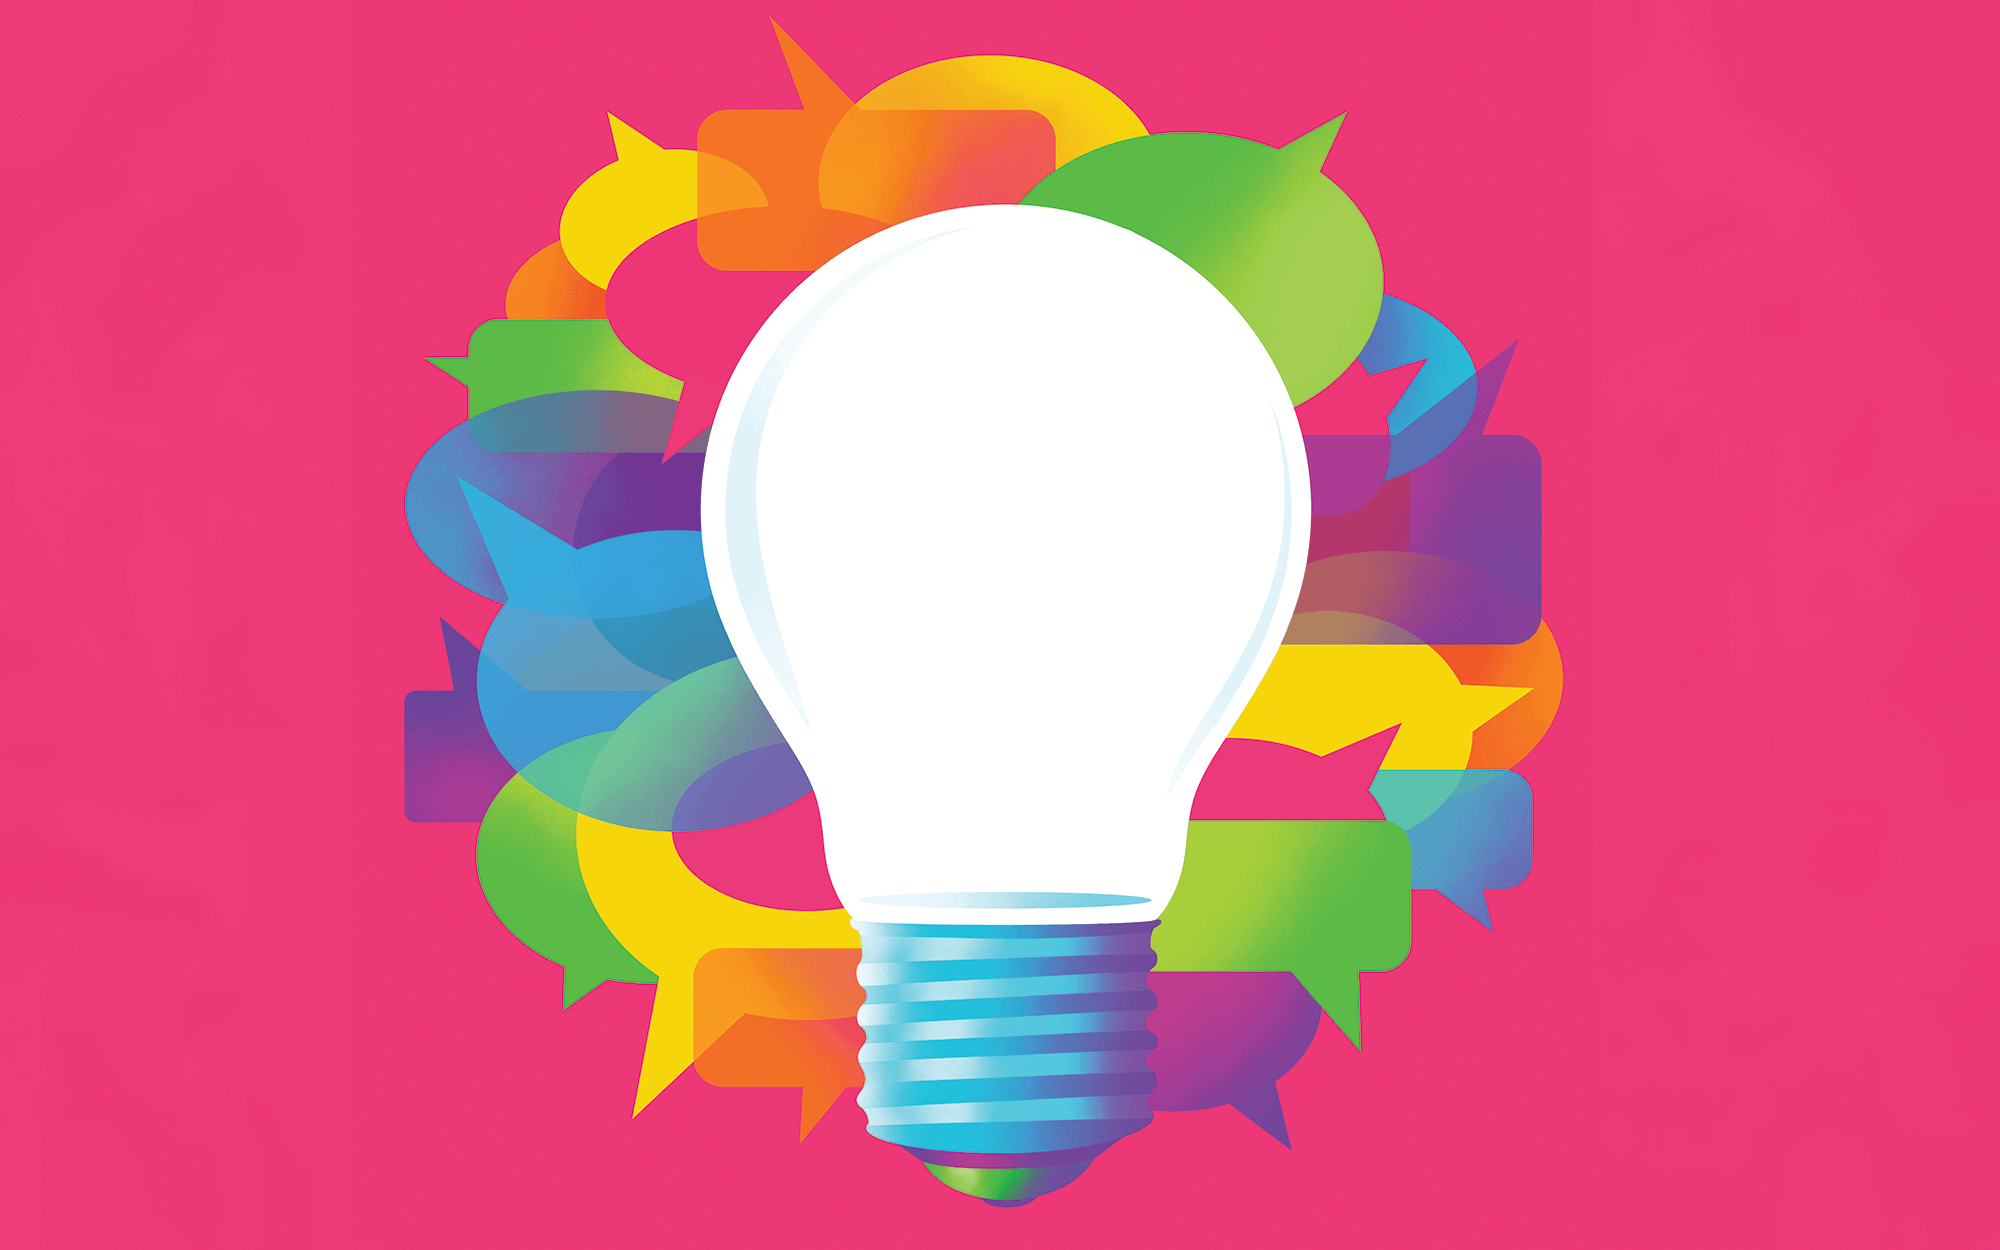 lightbulb illustration